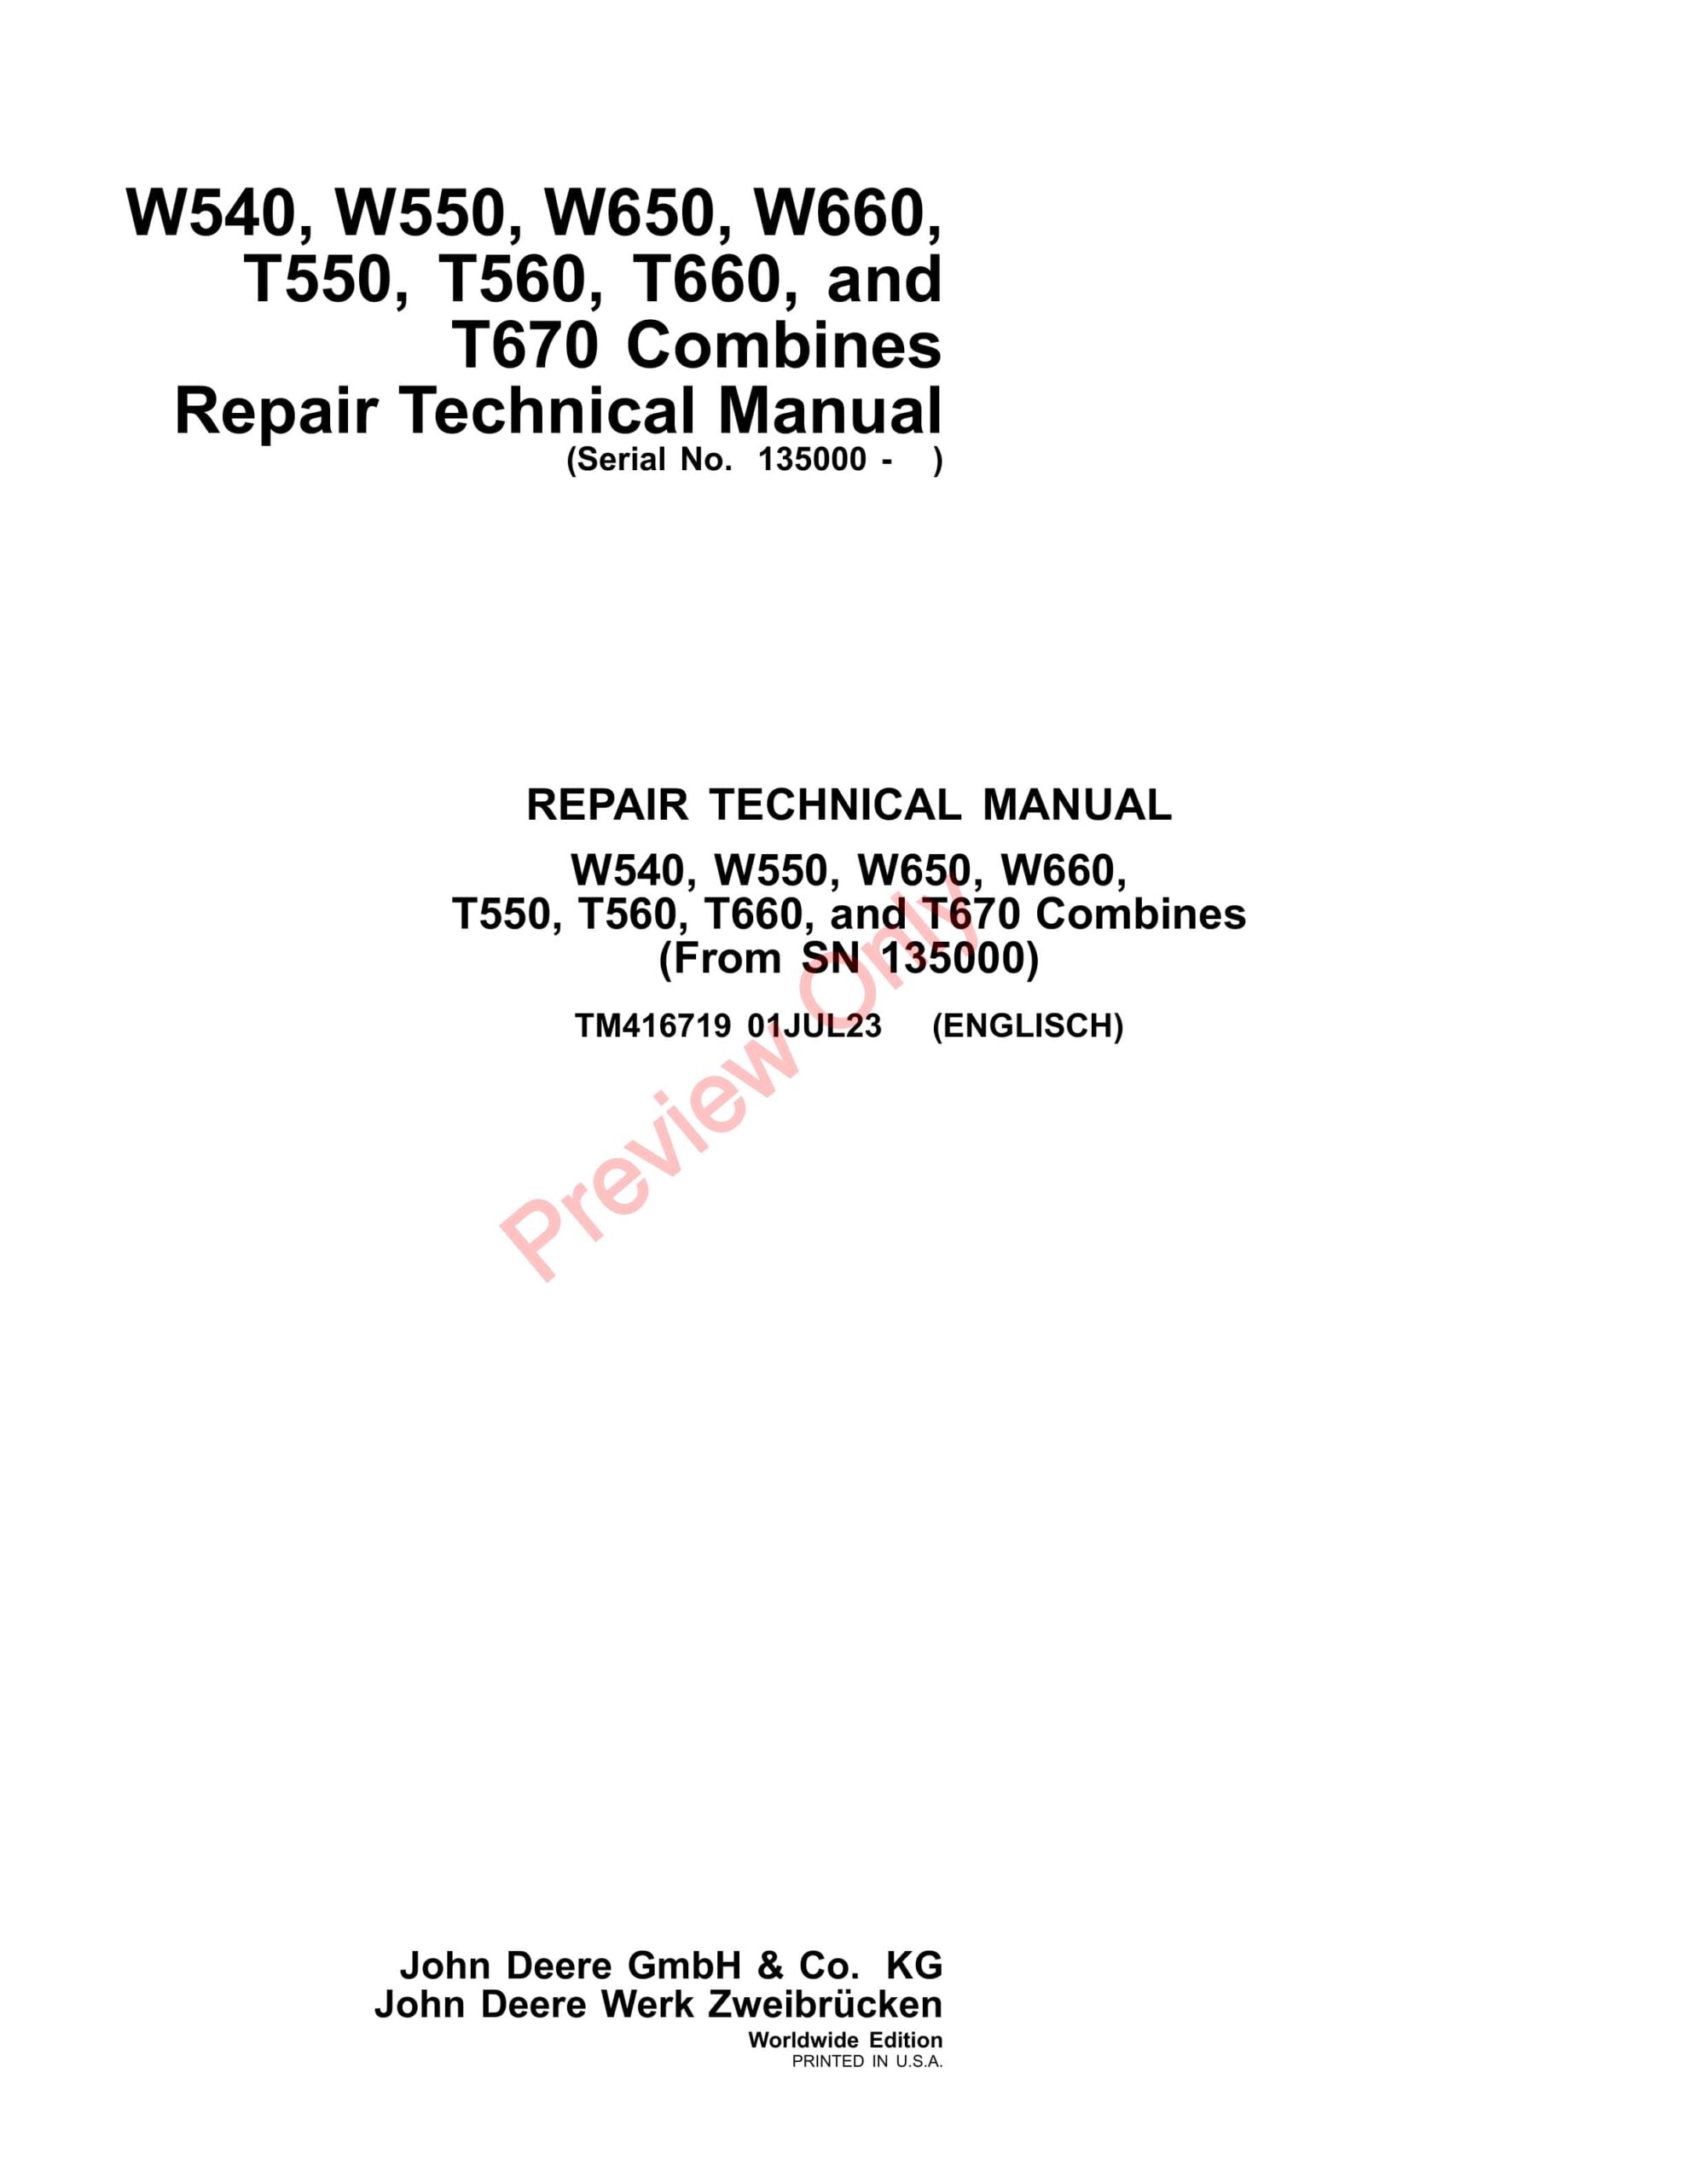 John Deere W540, W550, W650, W660,T550, T560, T660, and T670 Combines Repair Technical Manual TM416719 01JUL23-1